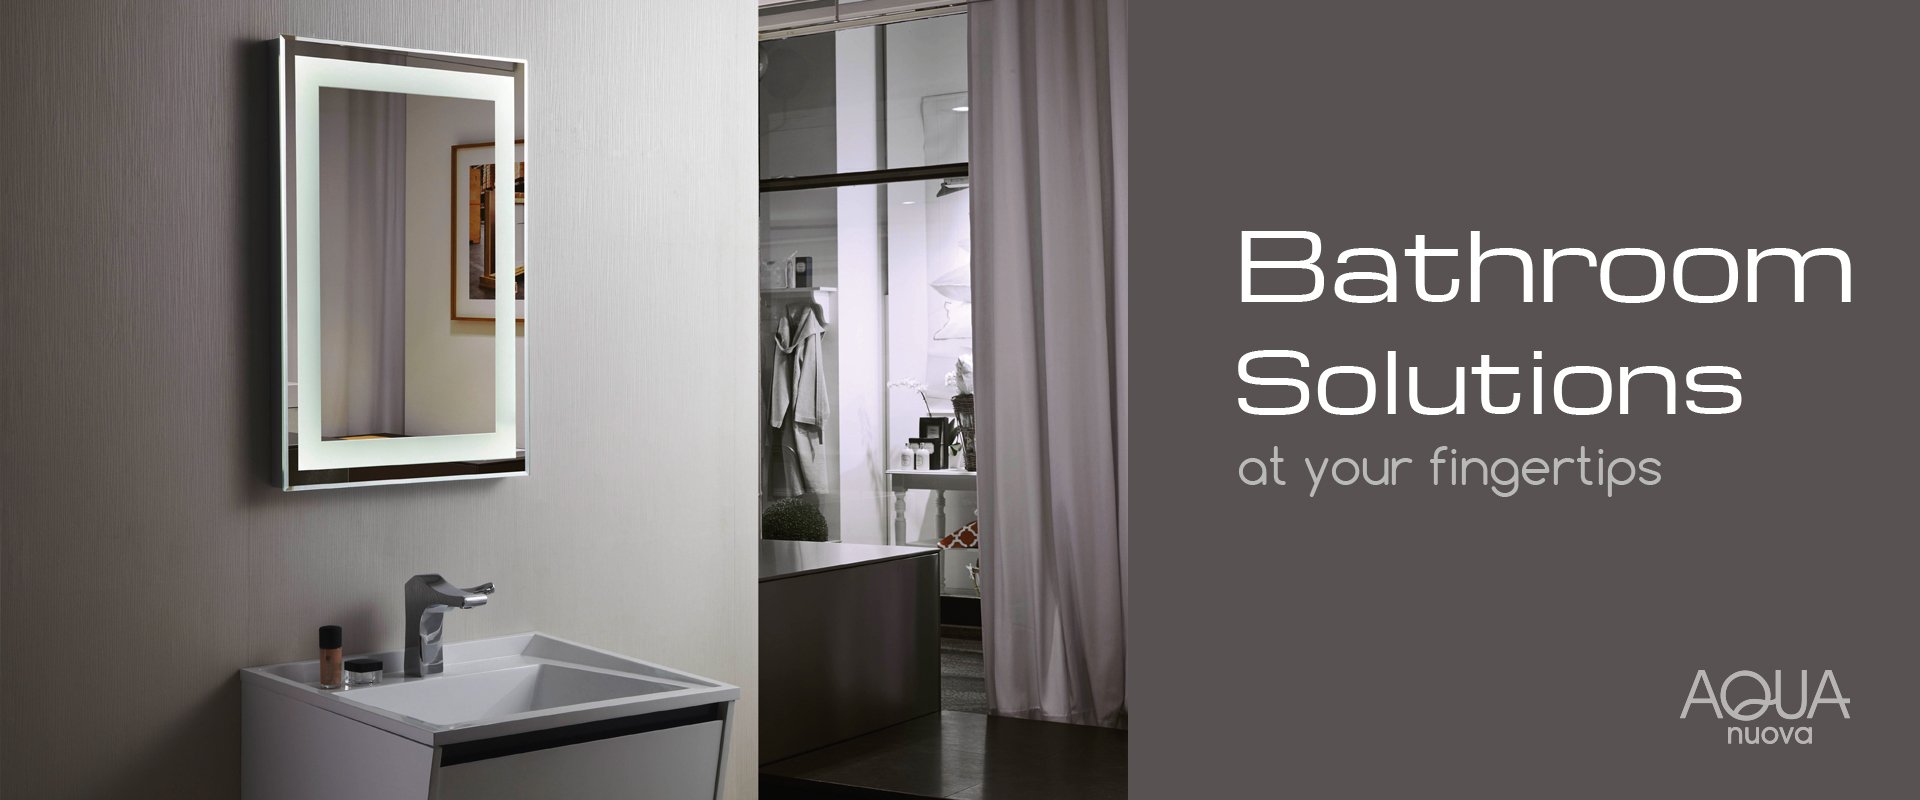 Bamerica bathroom solutions